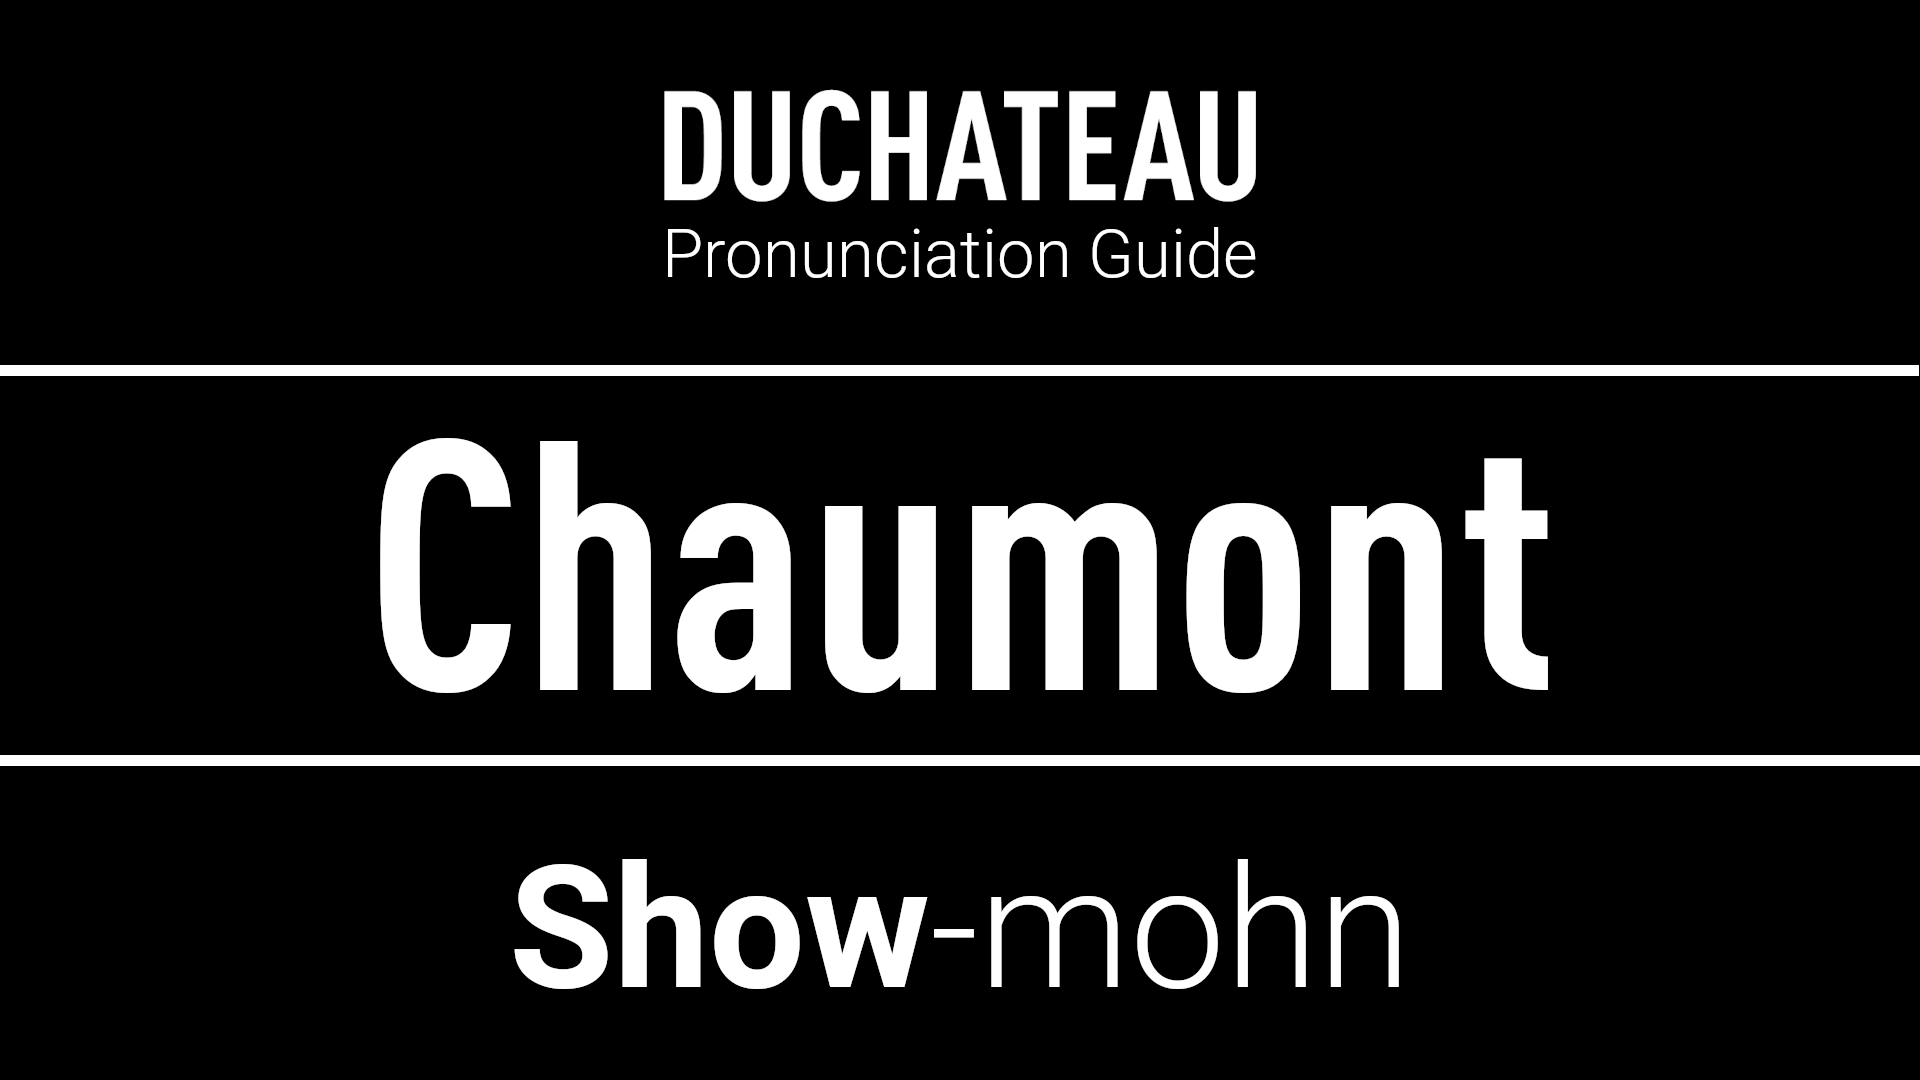 Chaumont Pronunciation